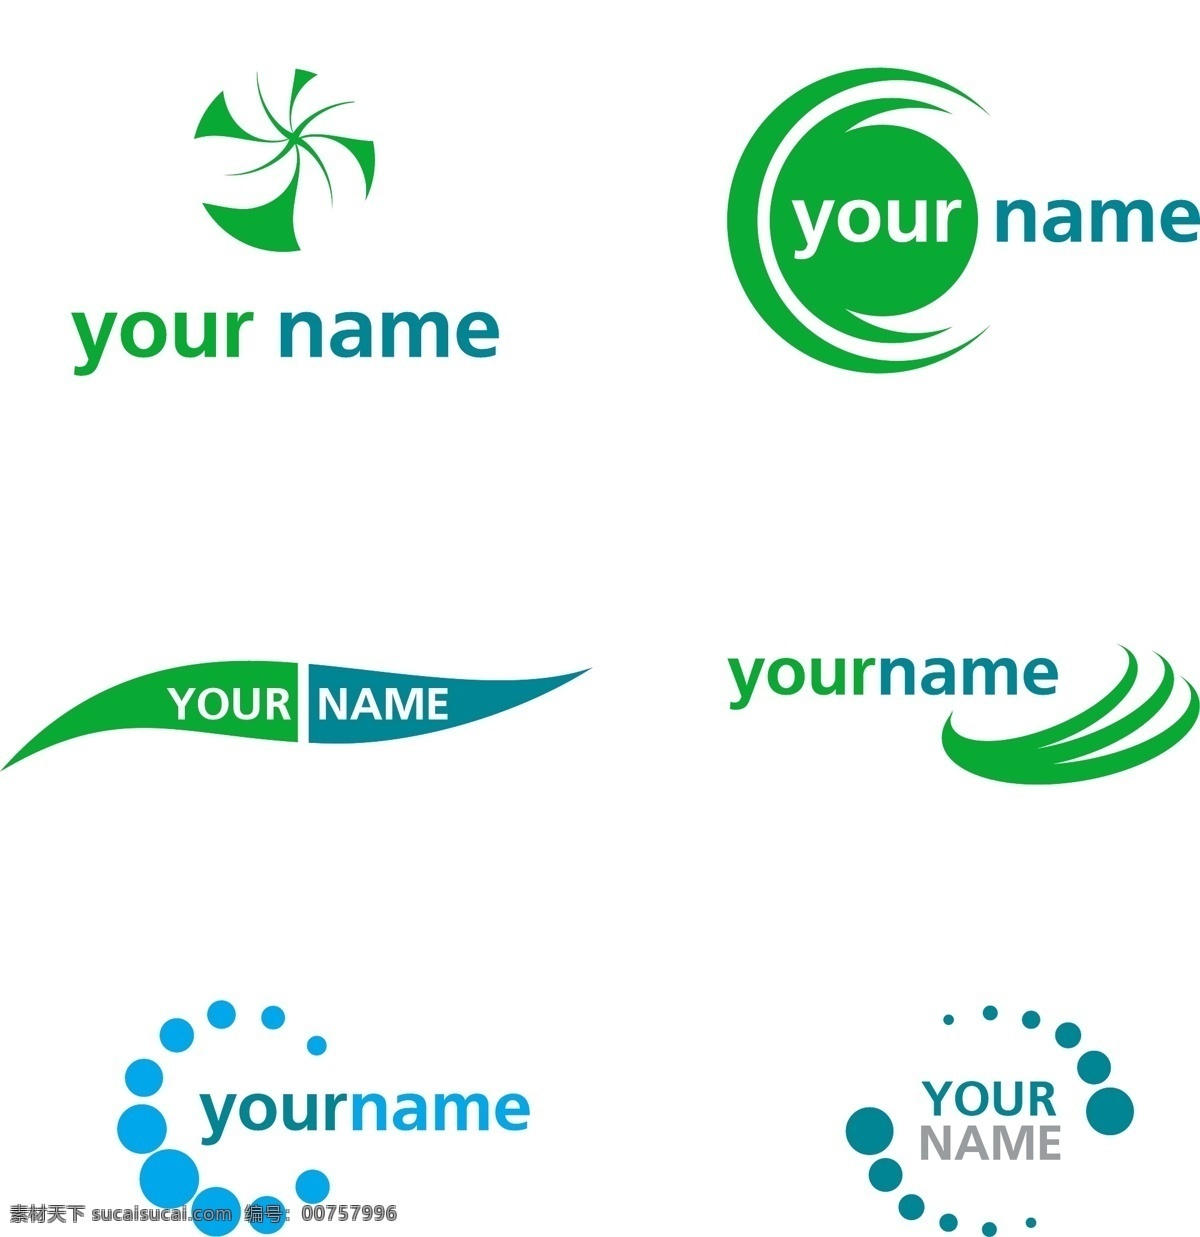 绿色环保 logo logo图形 标志设计 公司logo 企业logo 创意 标志图标 矢量素材 白色